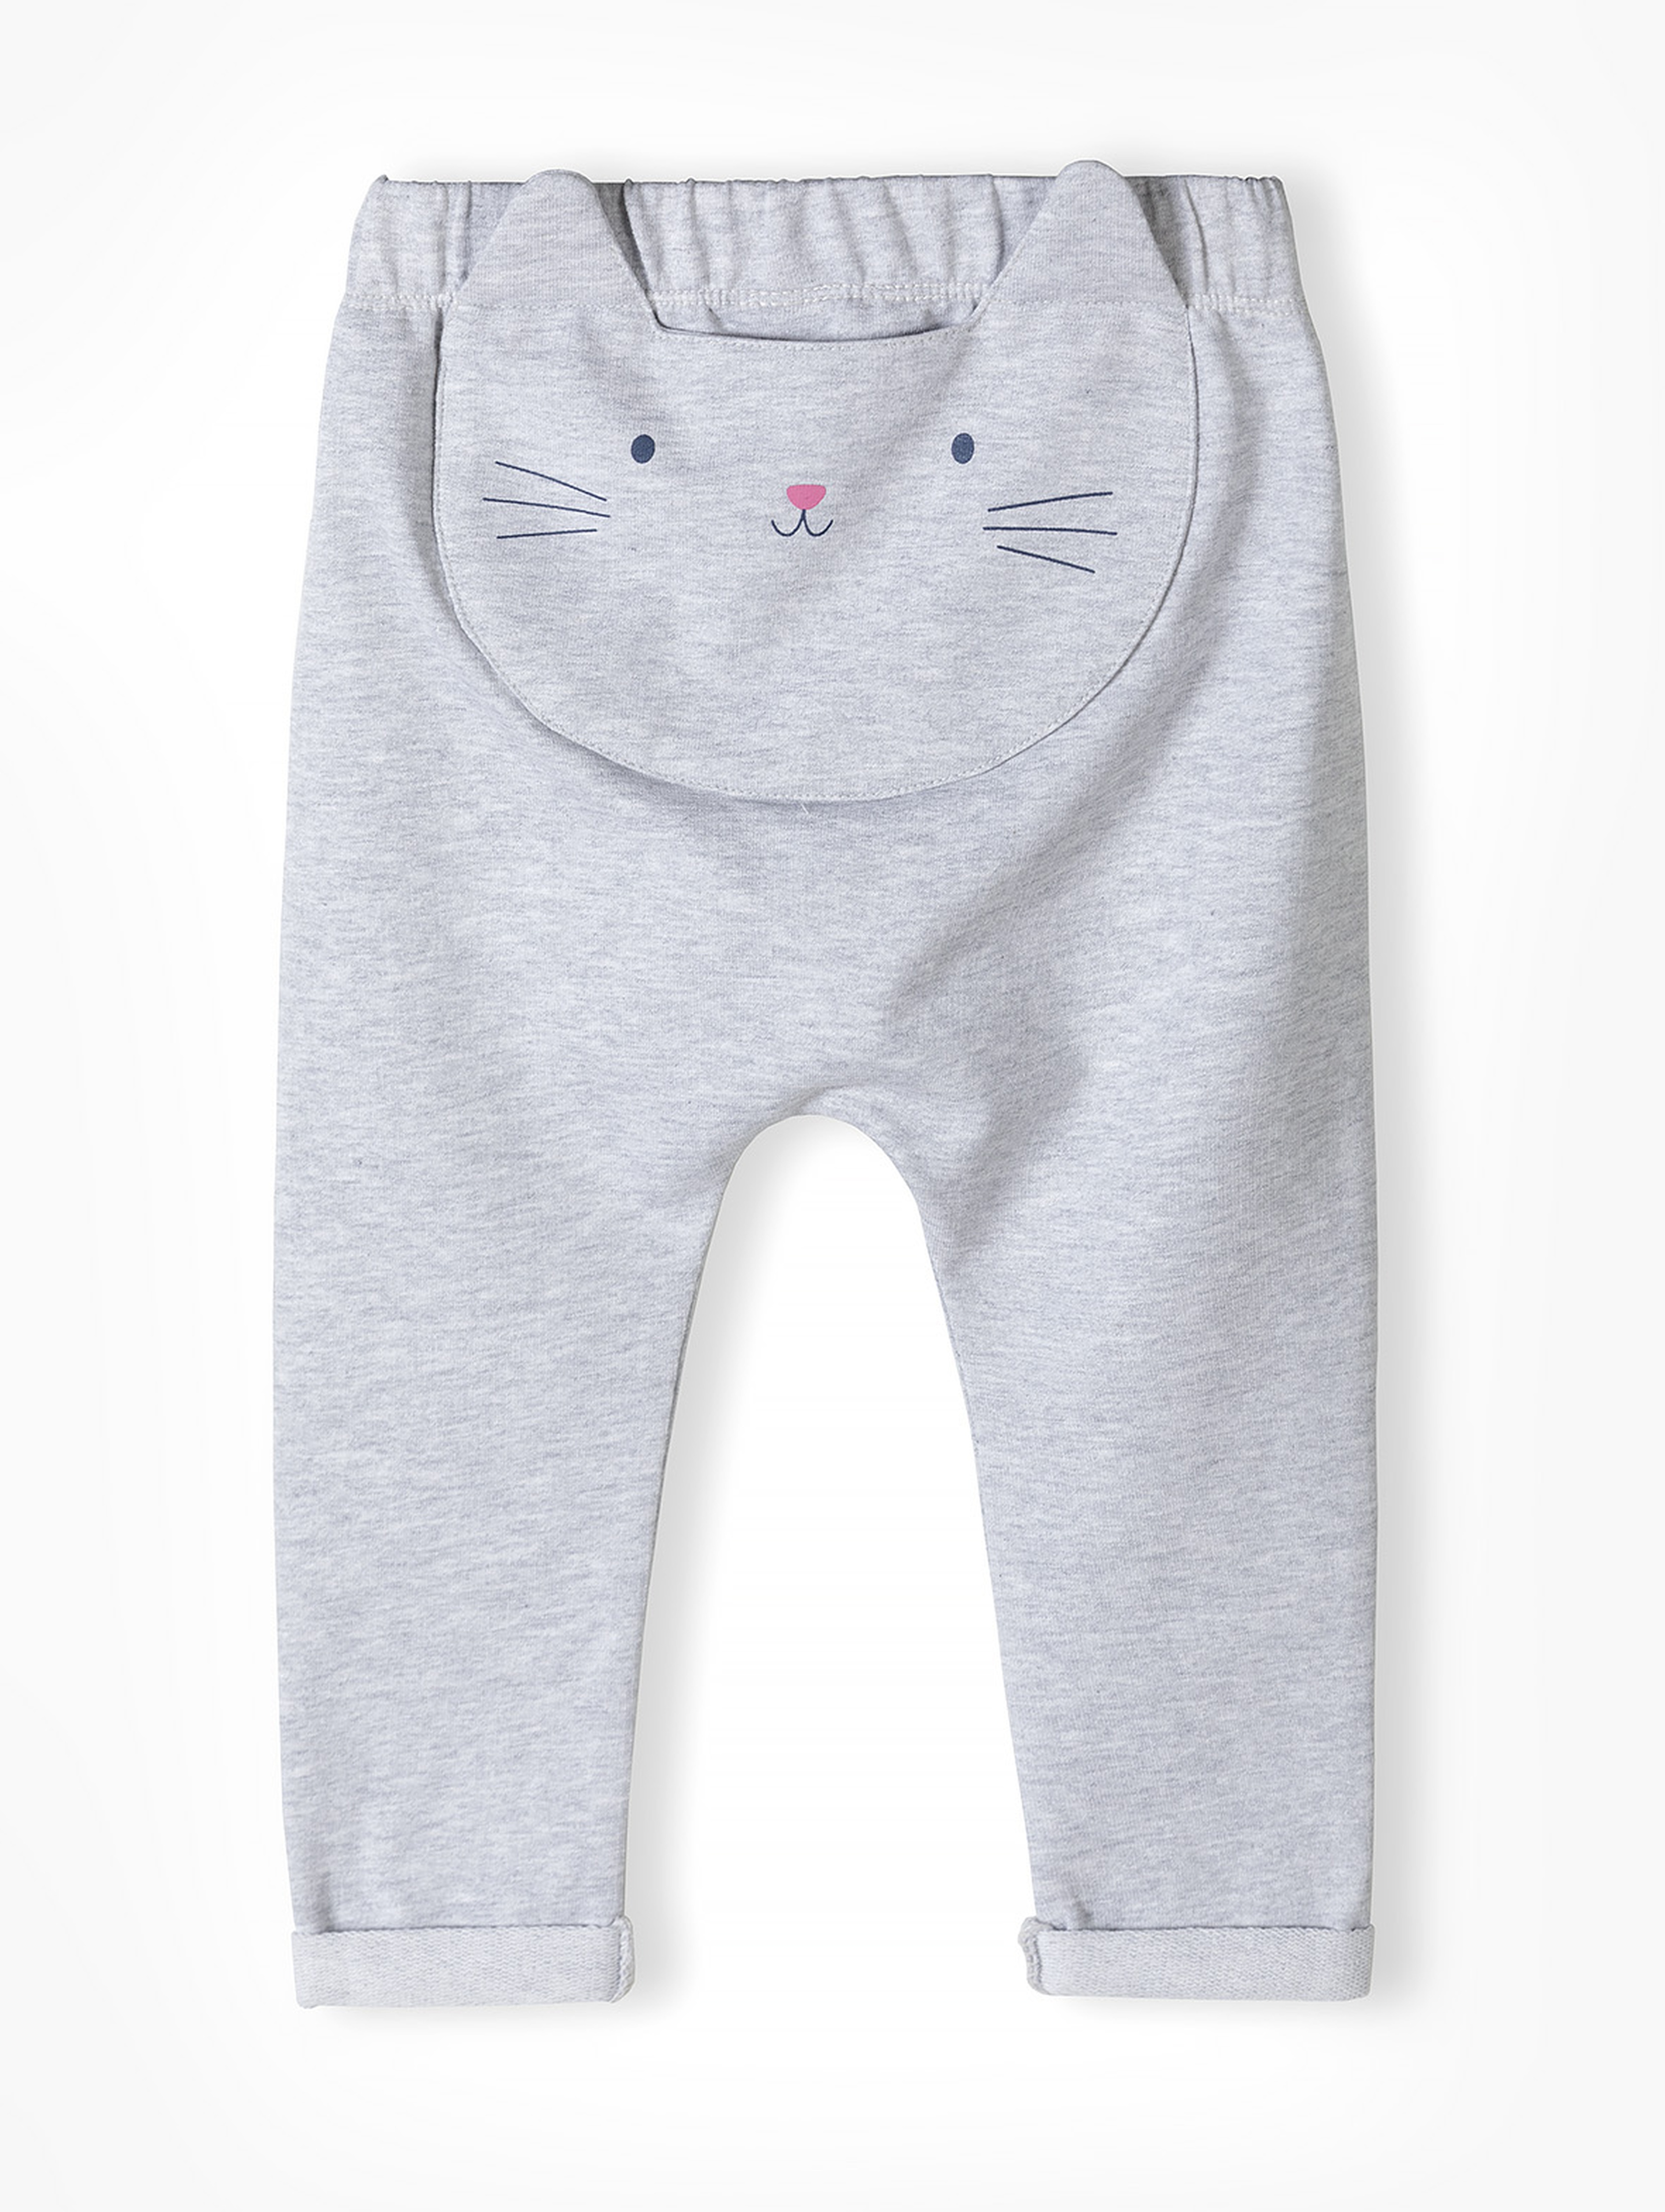 Szare spodnie dresowe niemowlęce z kotkiem